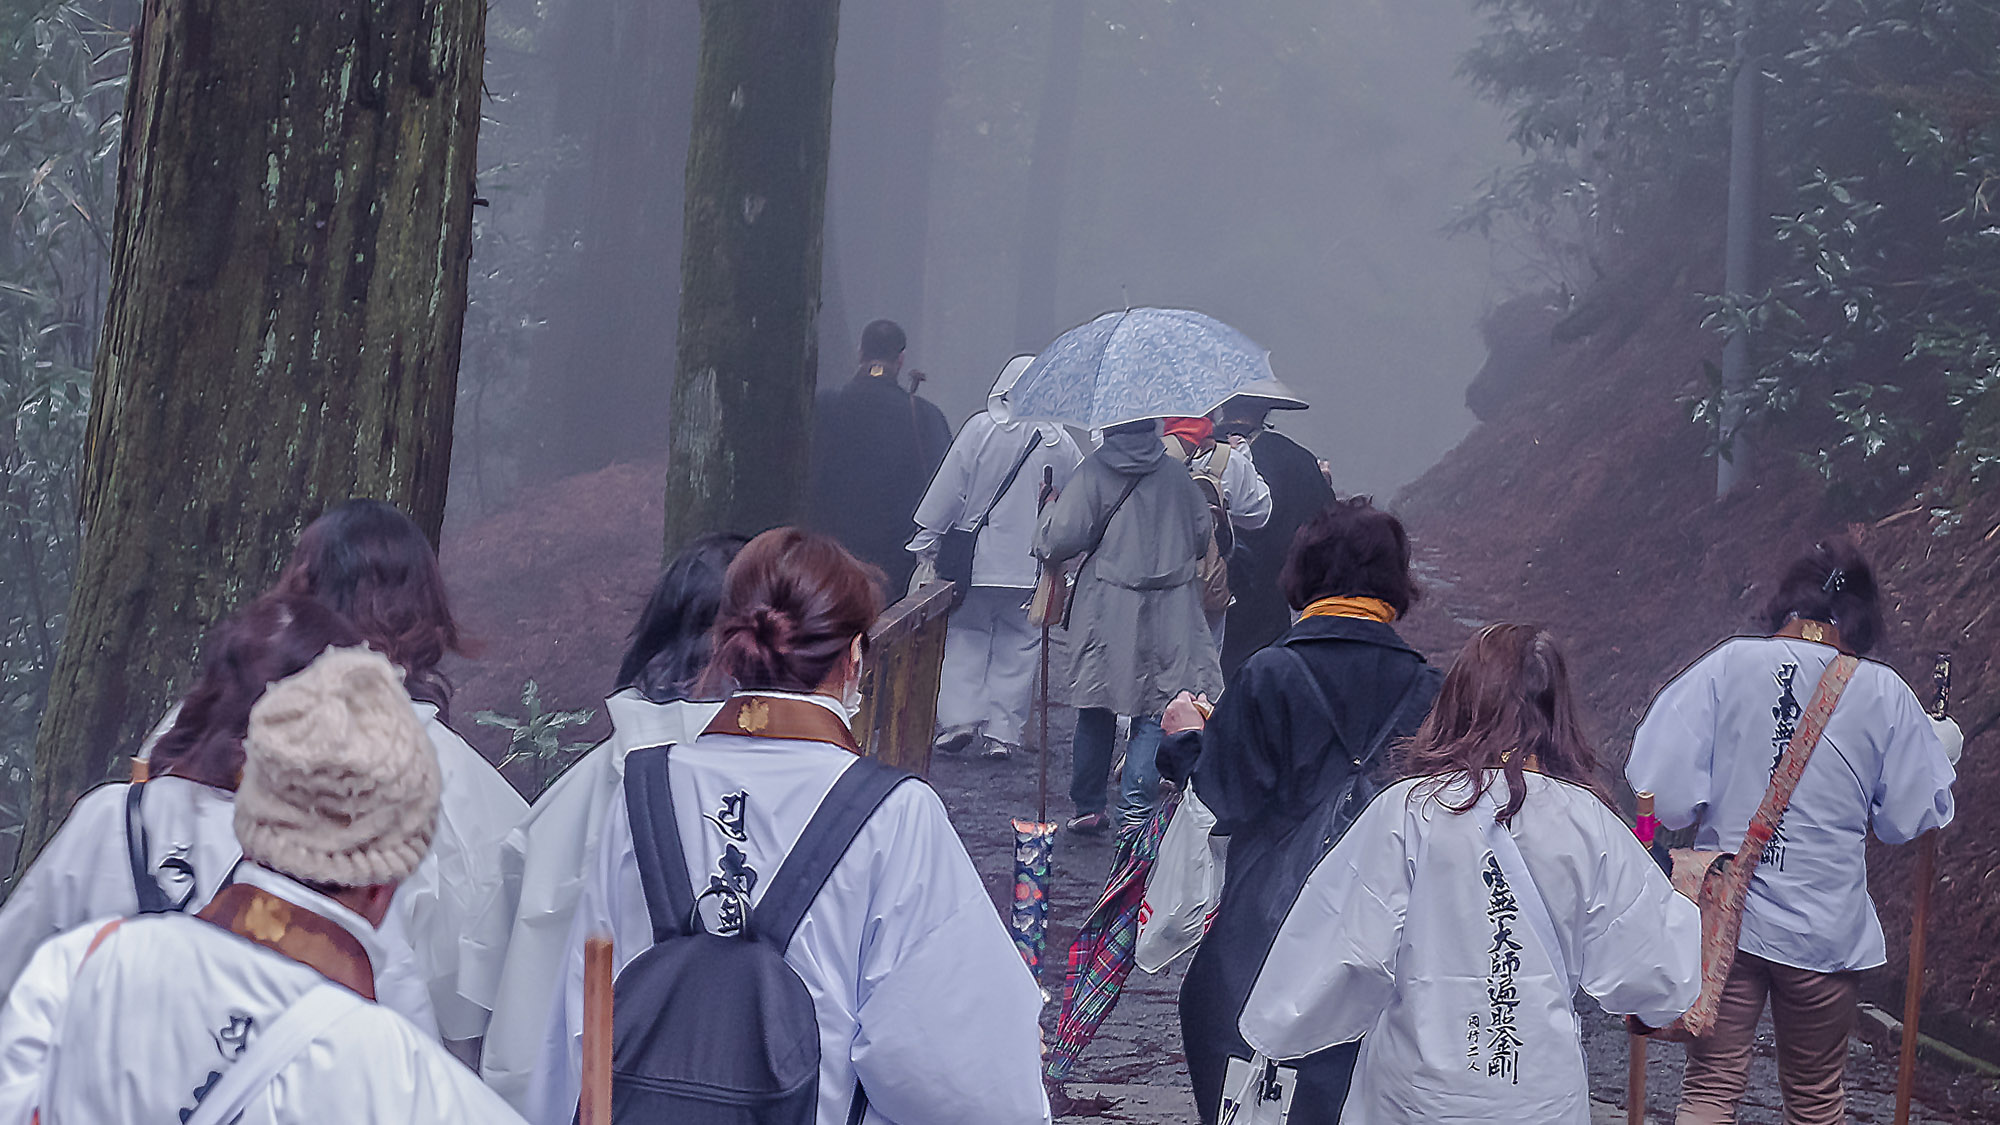 【お遍路】篠栗四国八十八箇所巡りのお遍路には多くの巡礼者が訪れます。